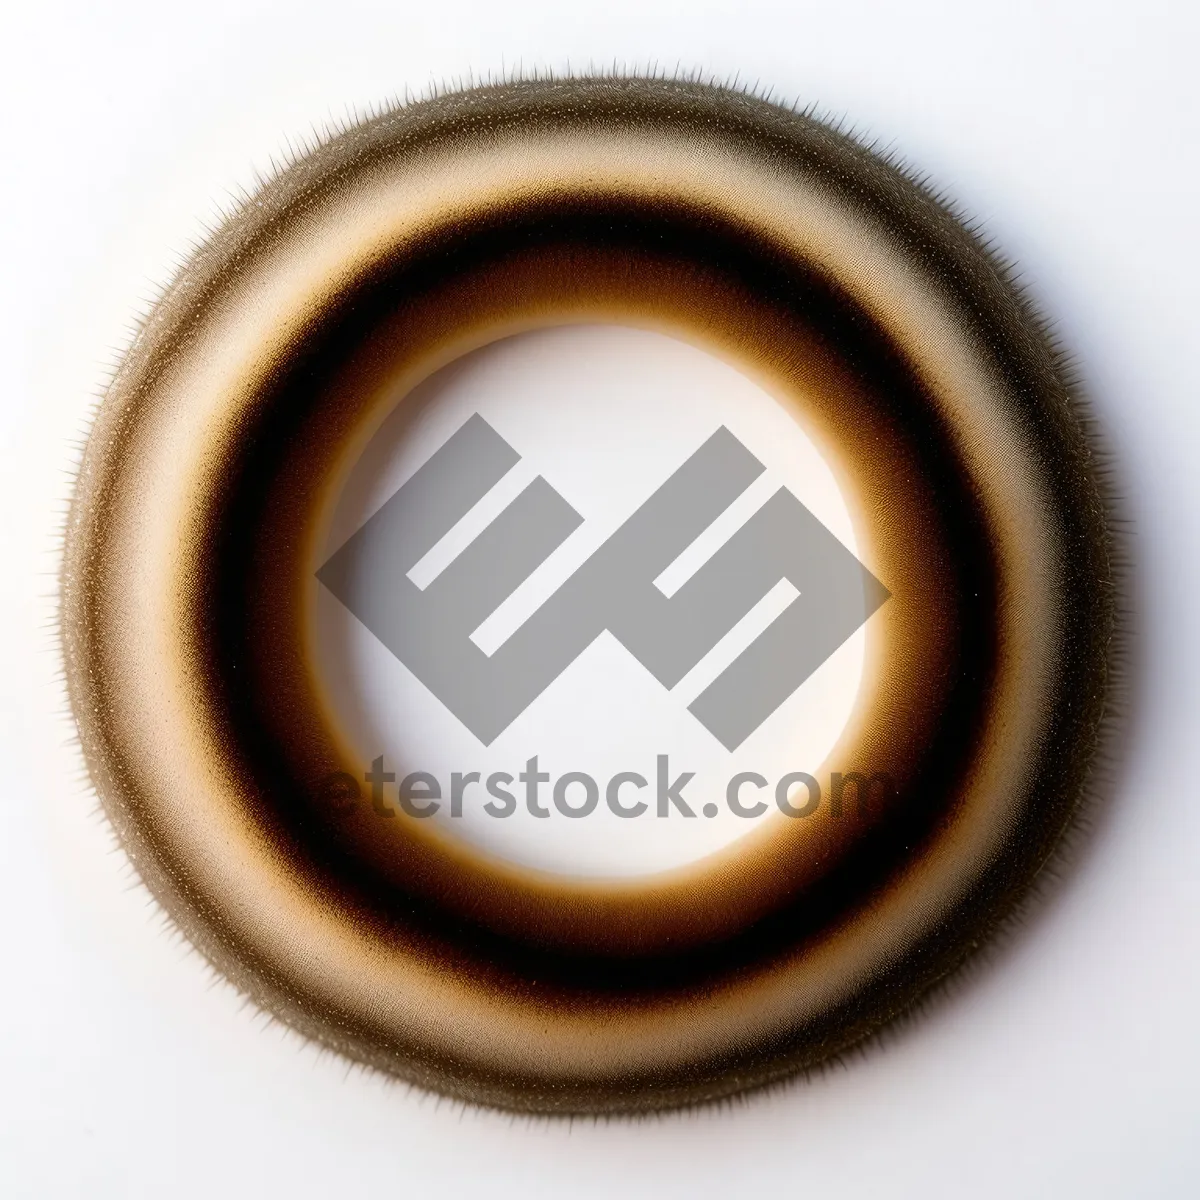 Picture of Shiny Black Button Set - Web Design Restraint